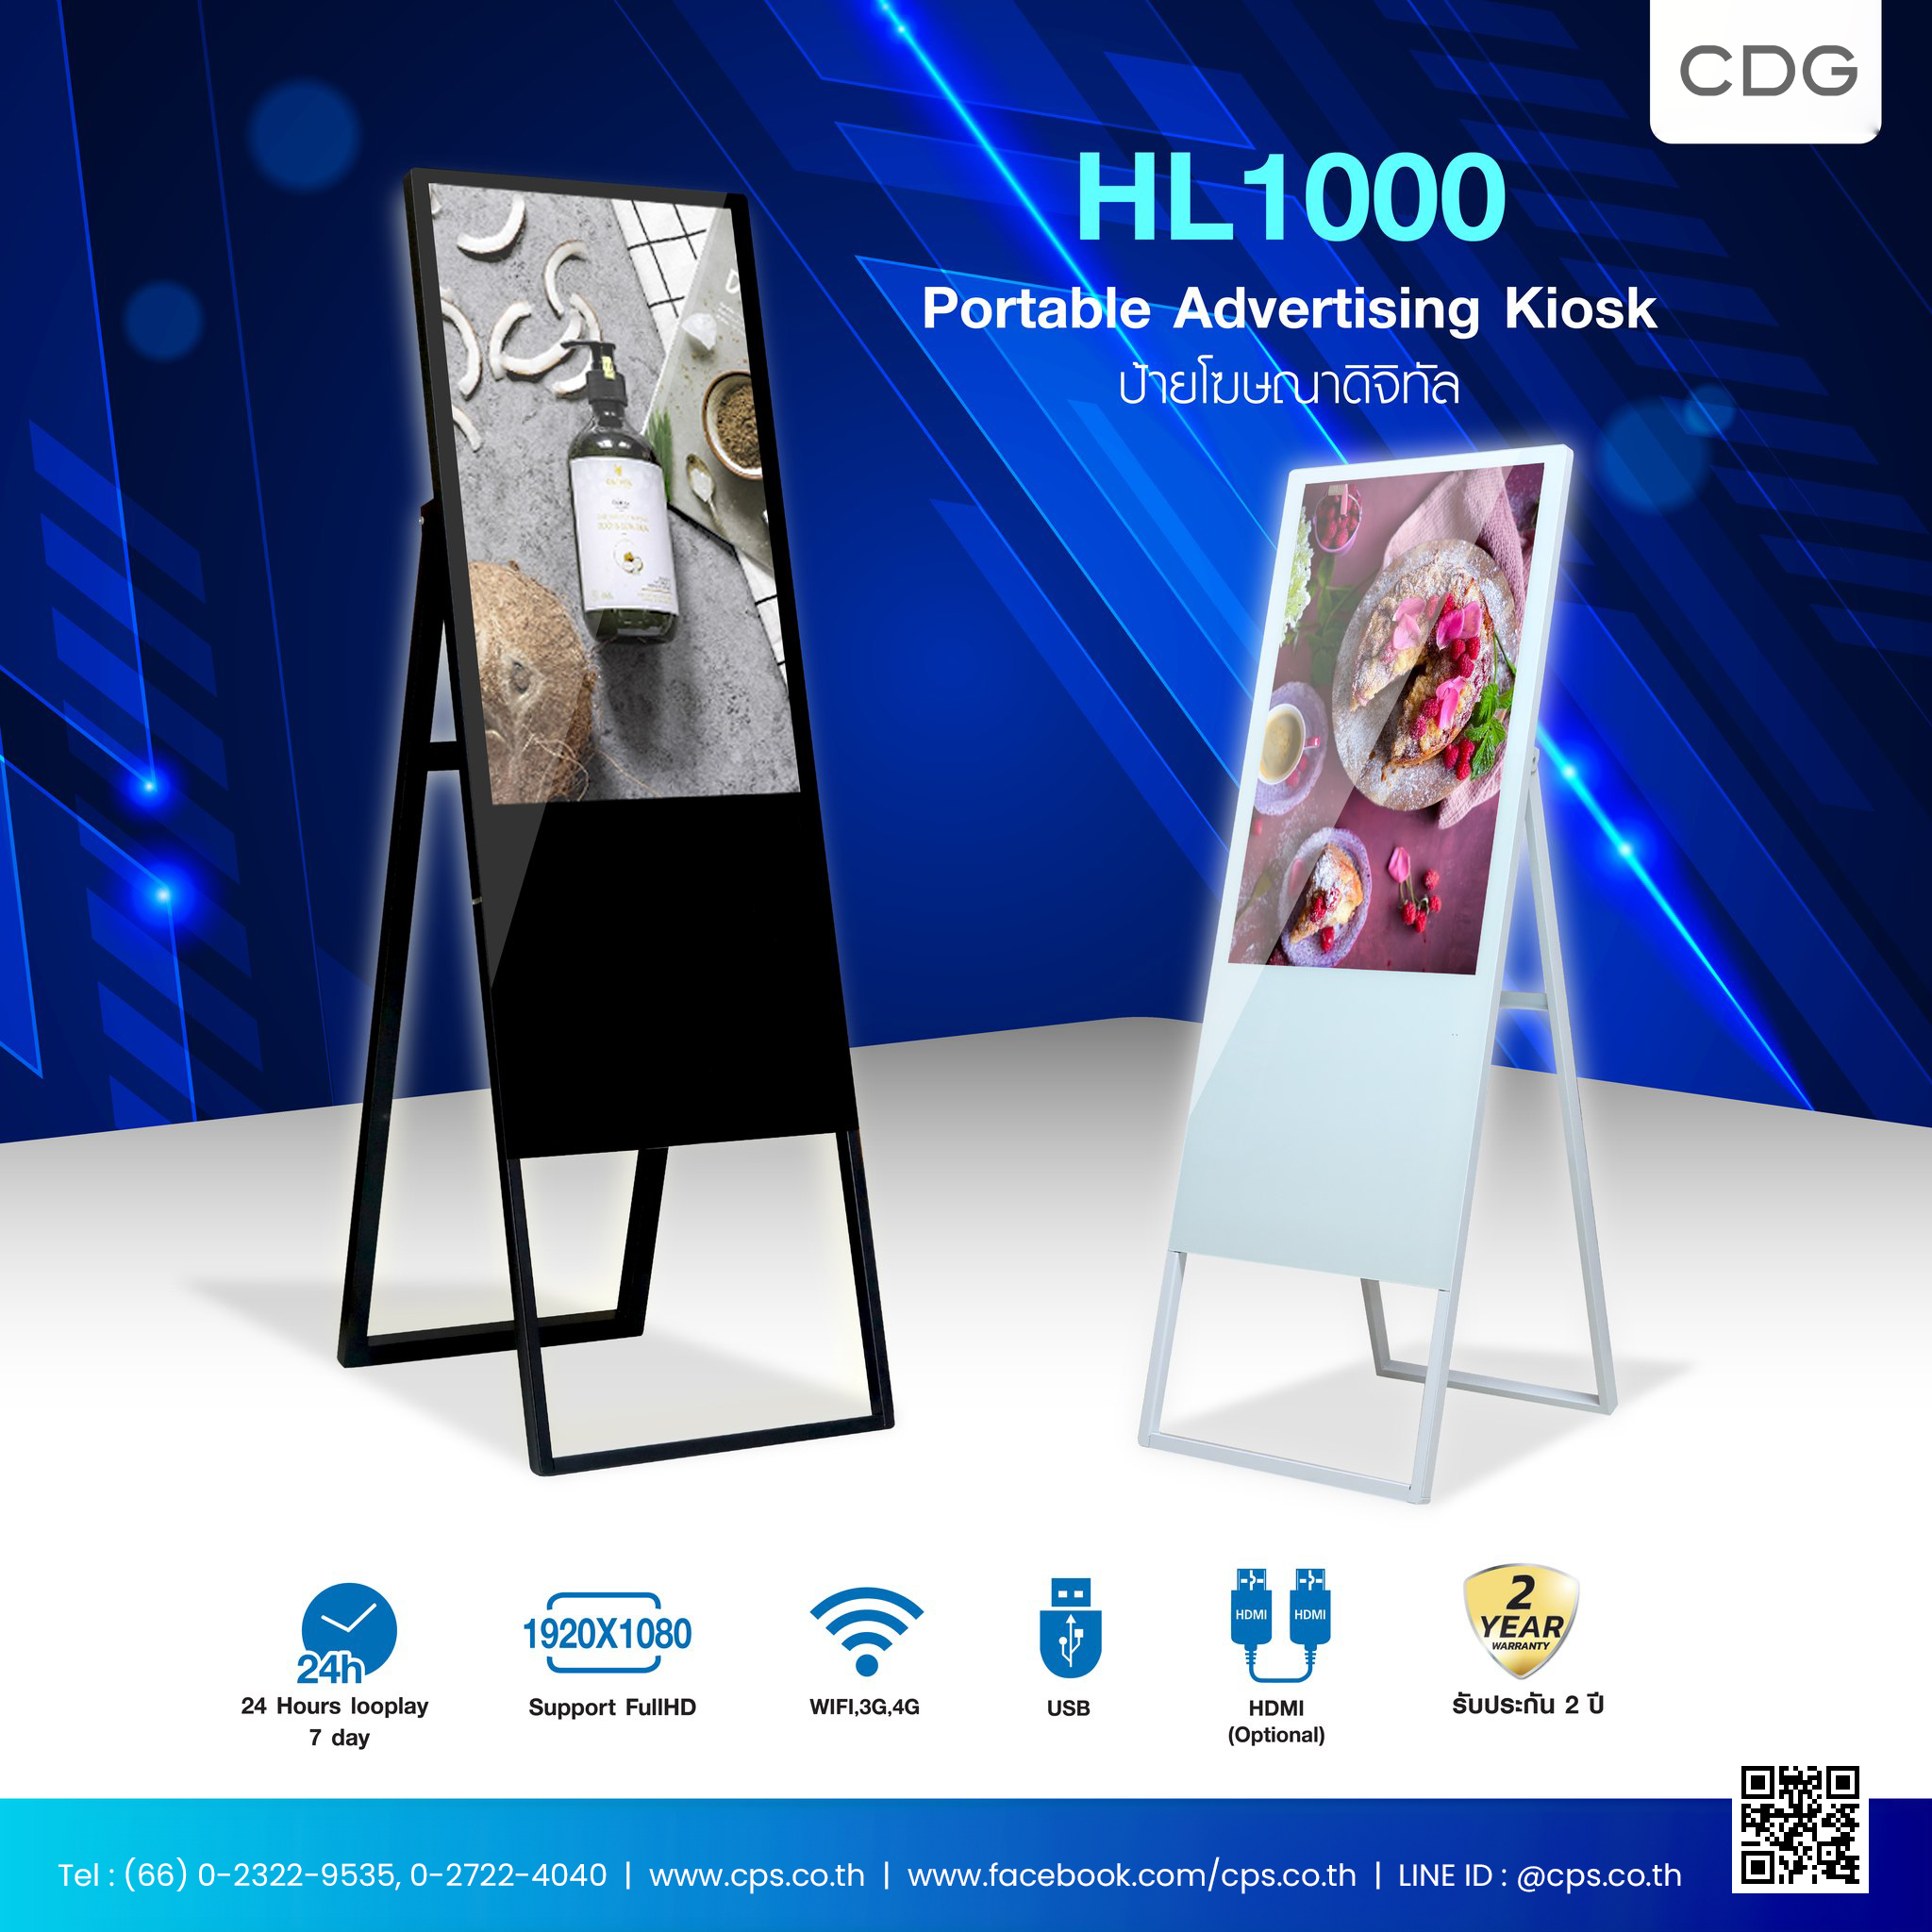 ป้ายโฆษณาดิจิตอล Portable Advertising Kiosk Model HL1000